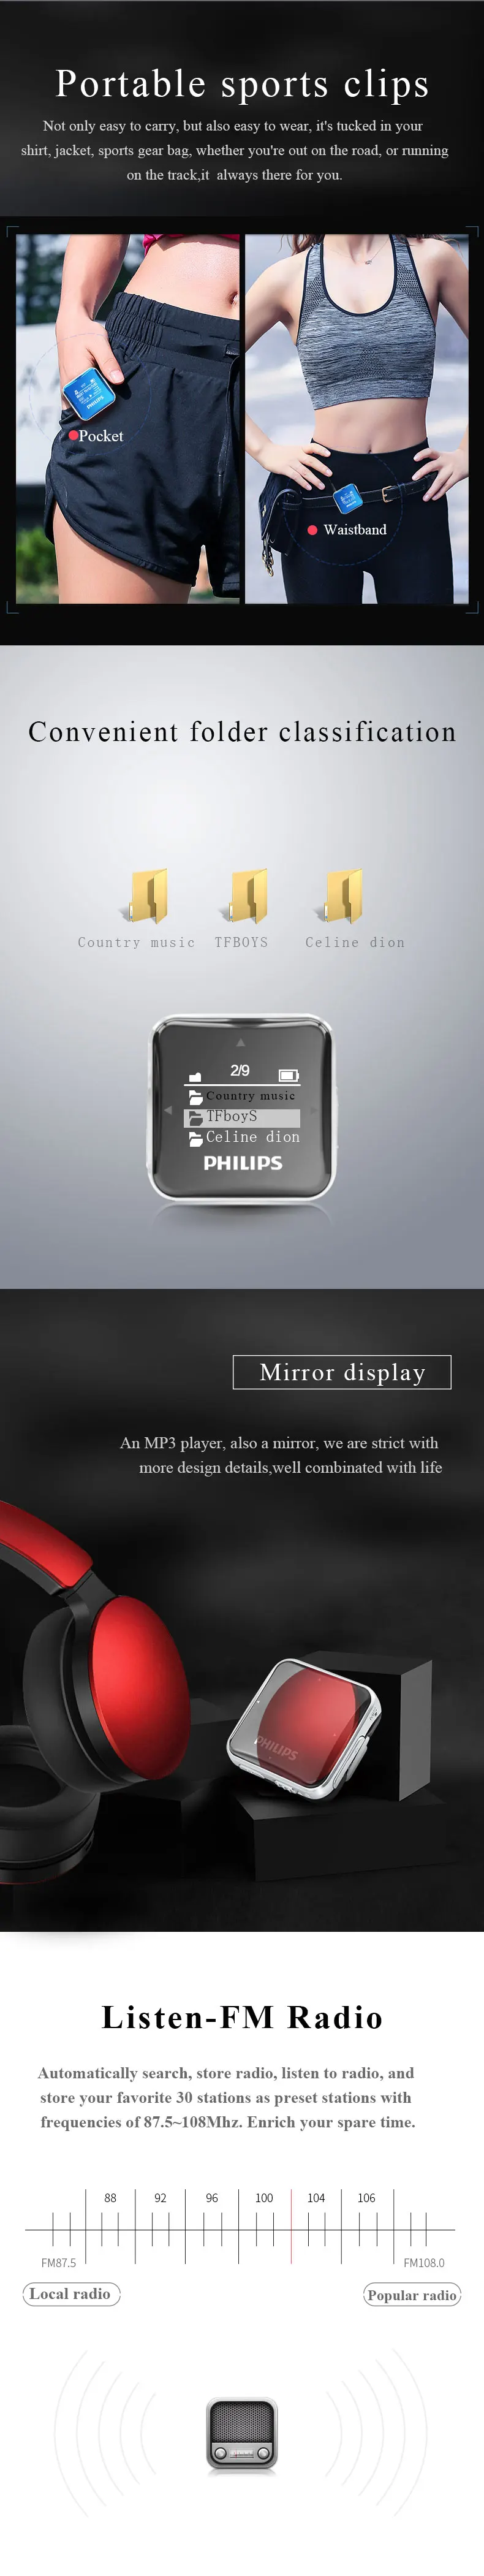 Philips мини MP3 плеер Спорт Полный звук большой экран с функцией записи/FM радио бег назад Клип Музыка SA2208